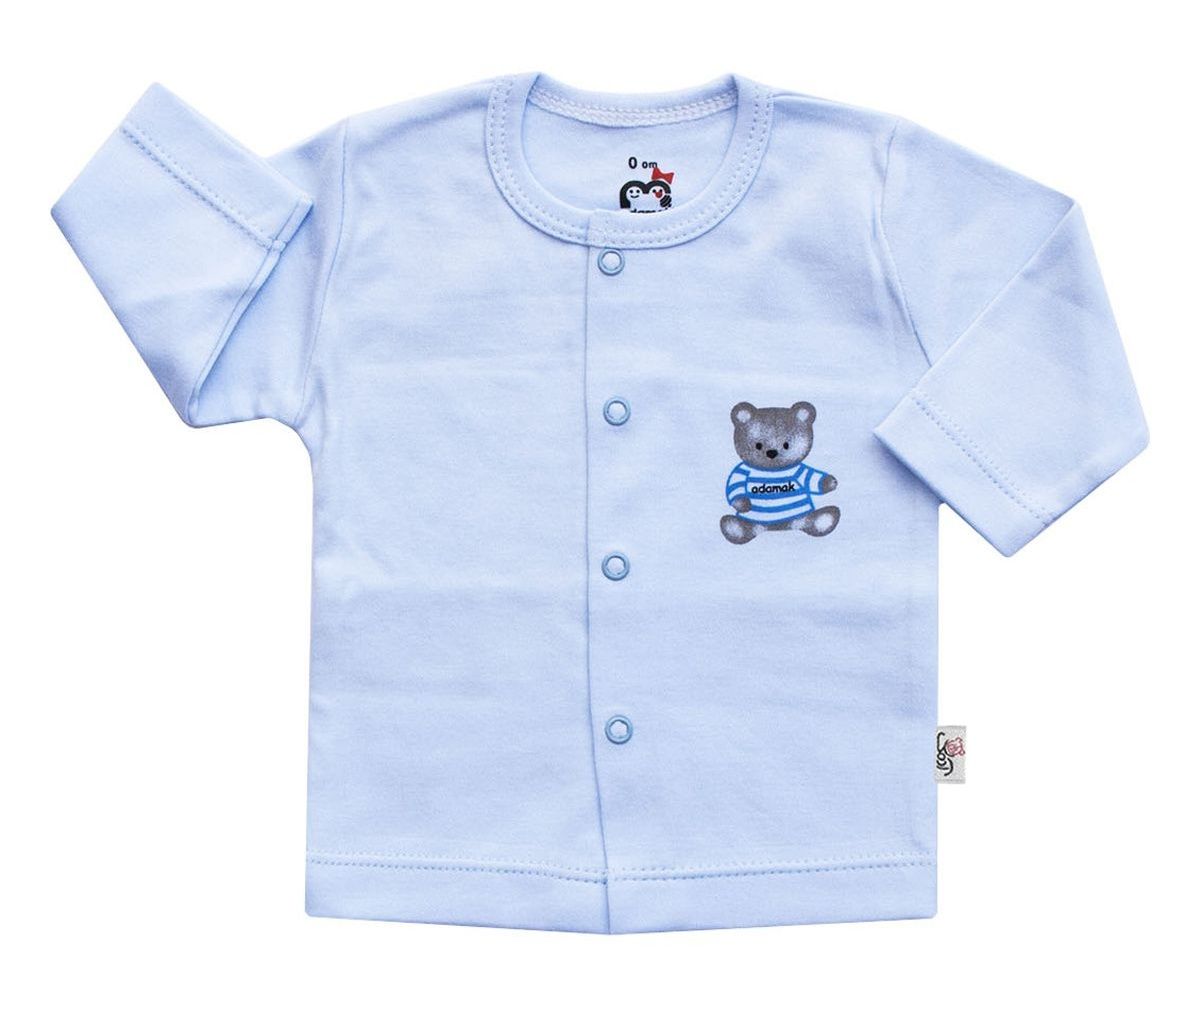 بلوز نوزادی آدمک طرح خرس رنگ آبی -  - 2